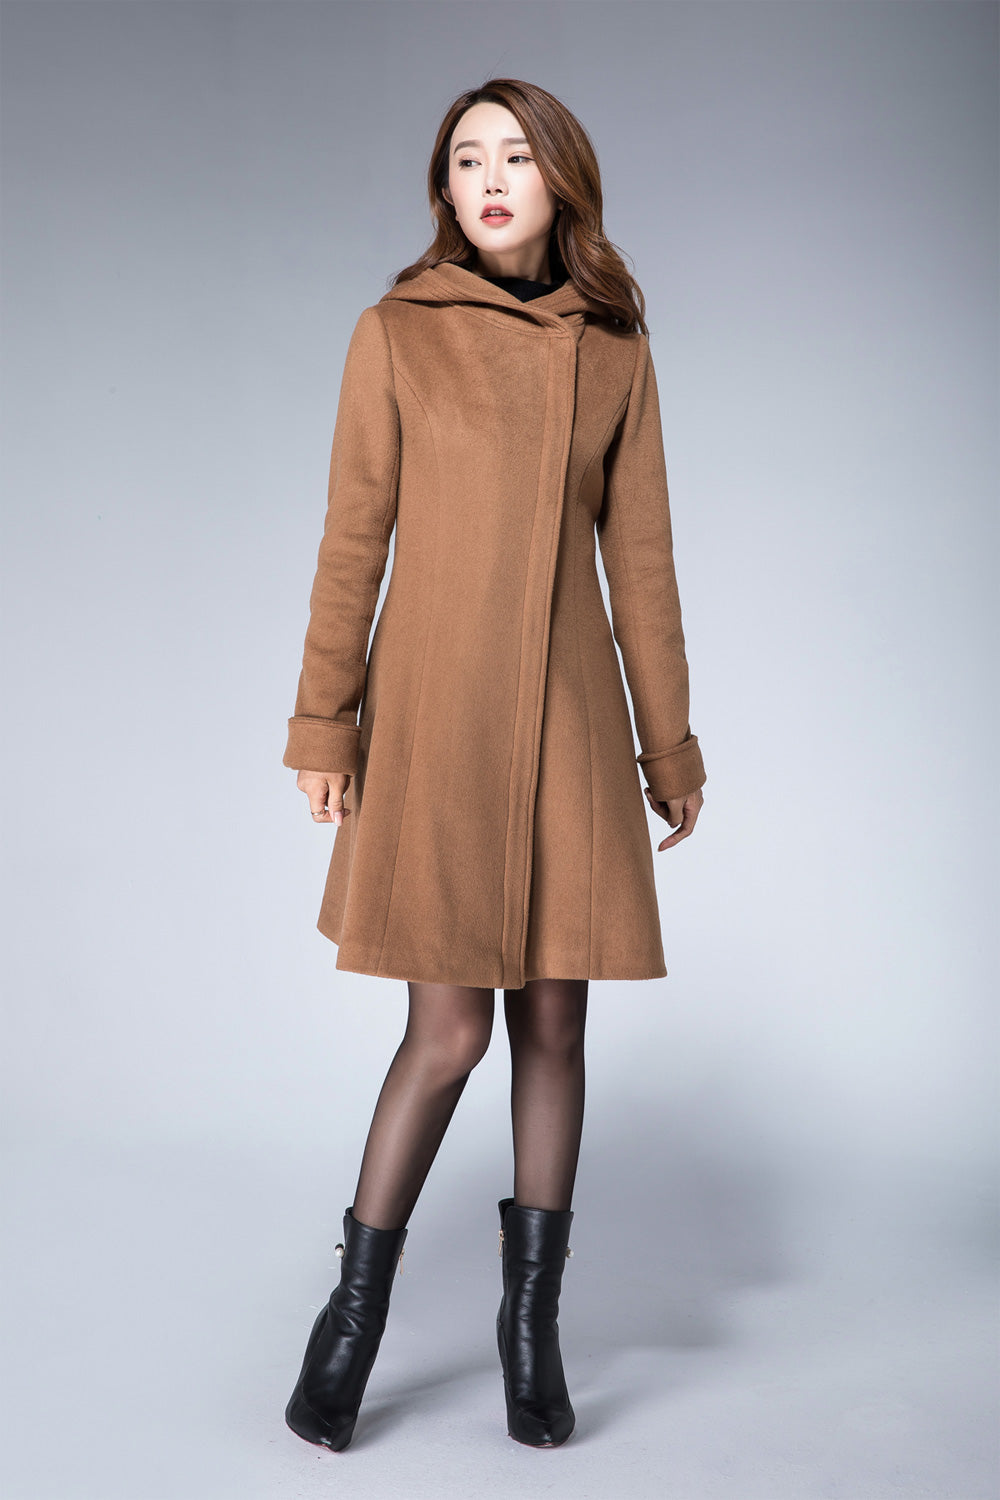 Hoodie jacket, camel coat, wool coat, minimalist coat, ladies coat 186 –  XiaoLizi